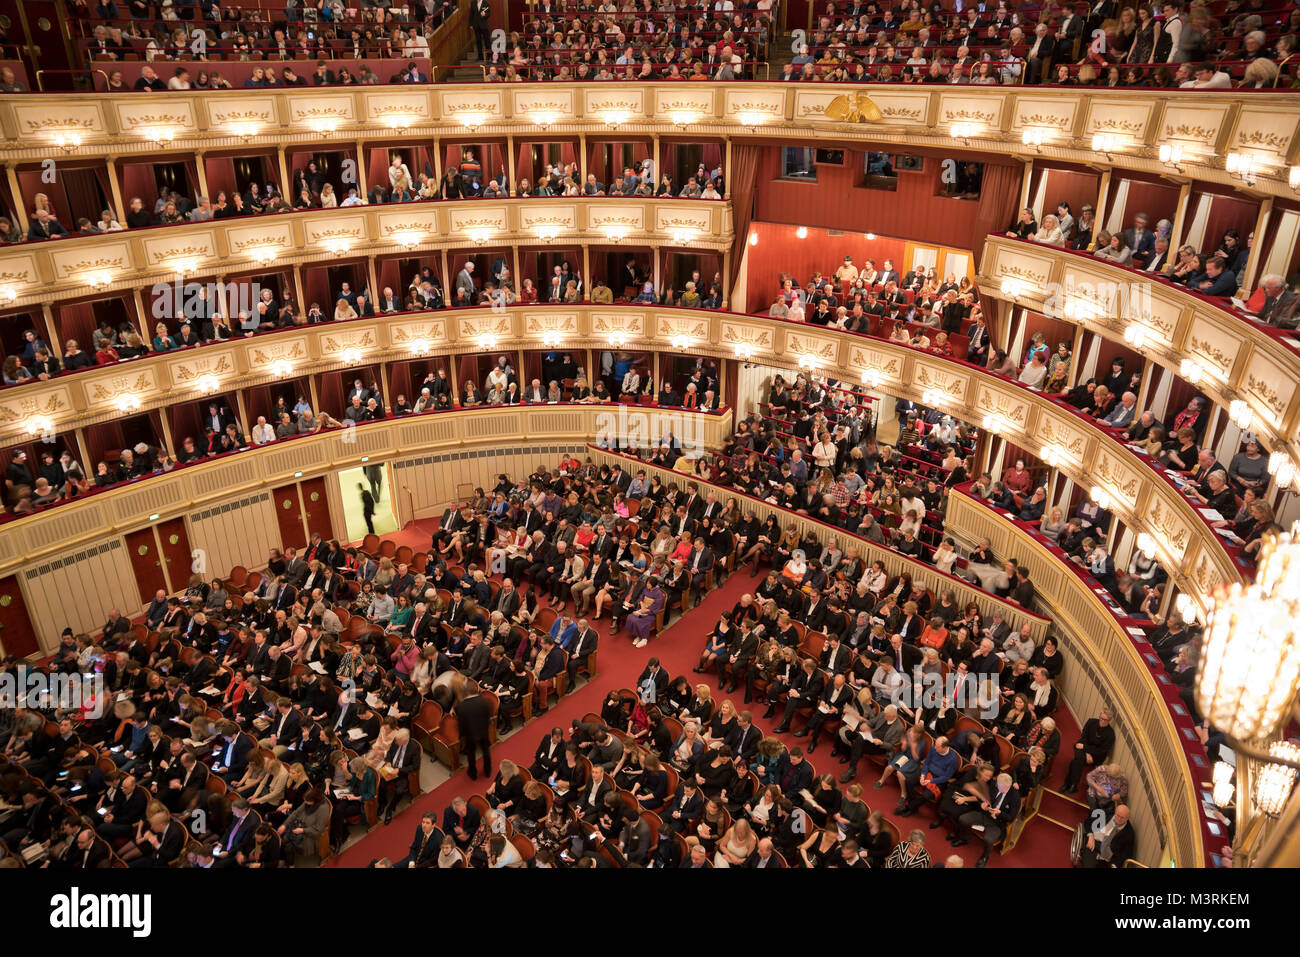 Vienne, AUTRICHE - Février, 2018 : Intérieur de l'auditorium de l'Opéra de Vienne à l'audience de se préparer pour le spectacle. Banque D'Images